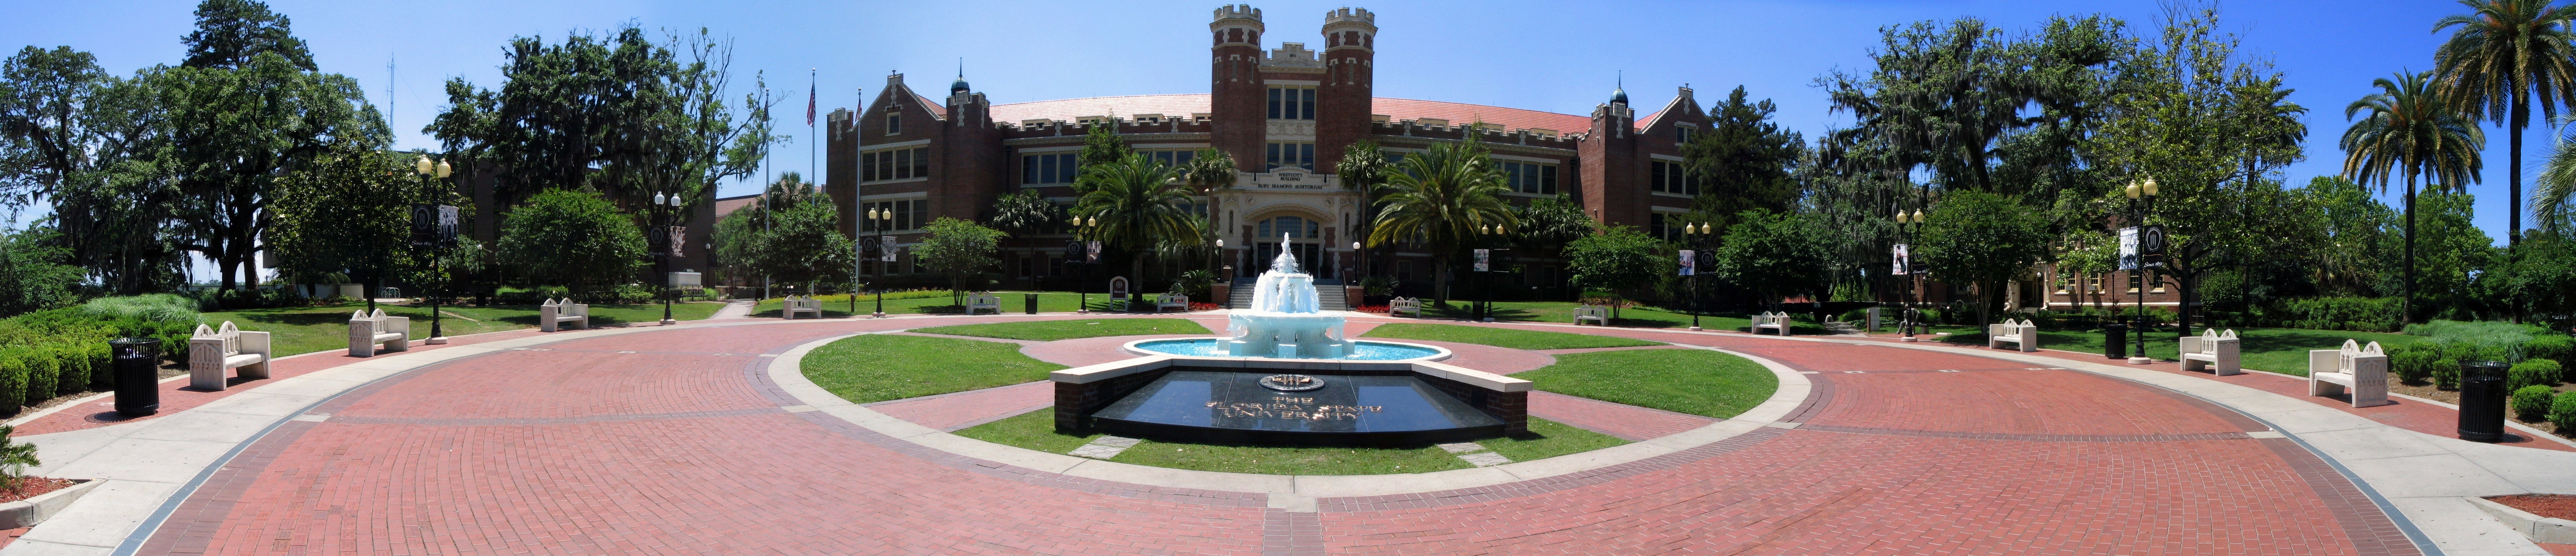 Florida State University - Wikipedia